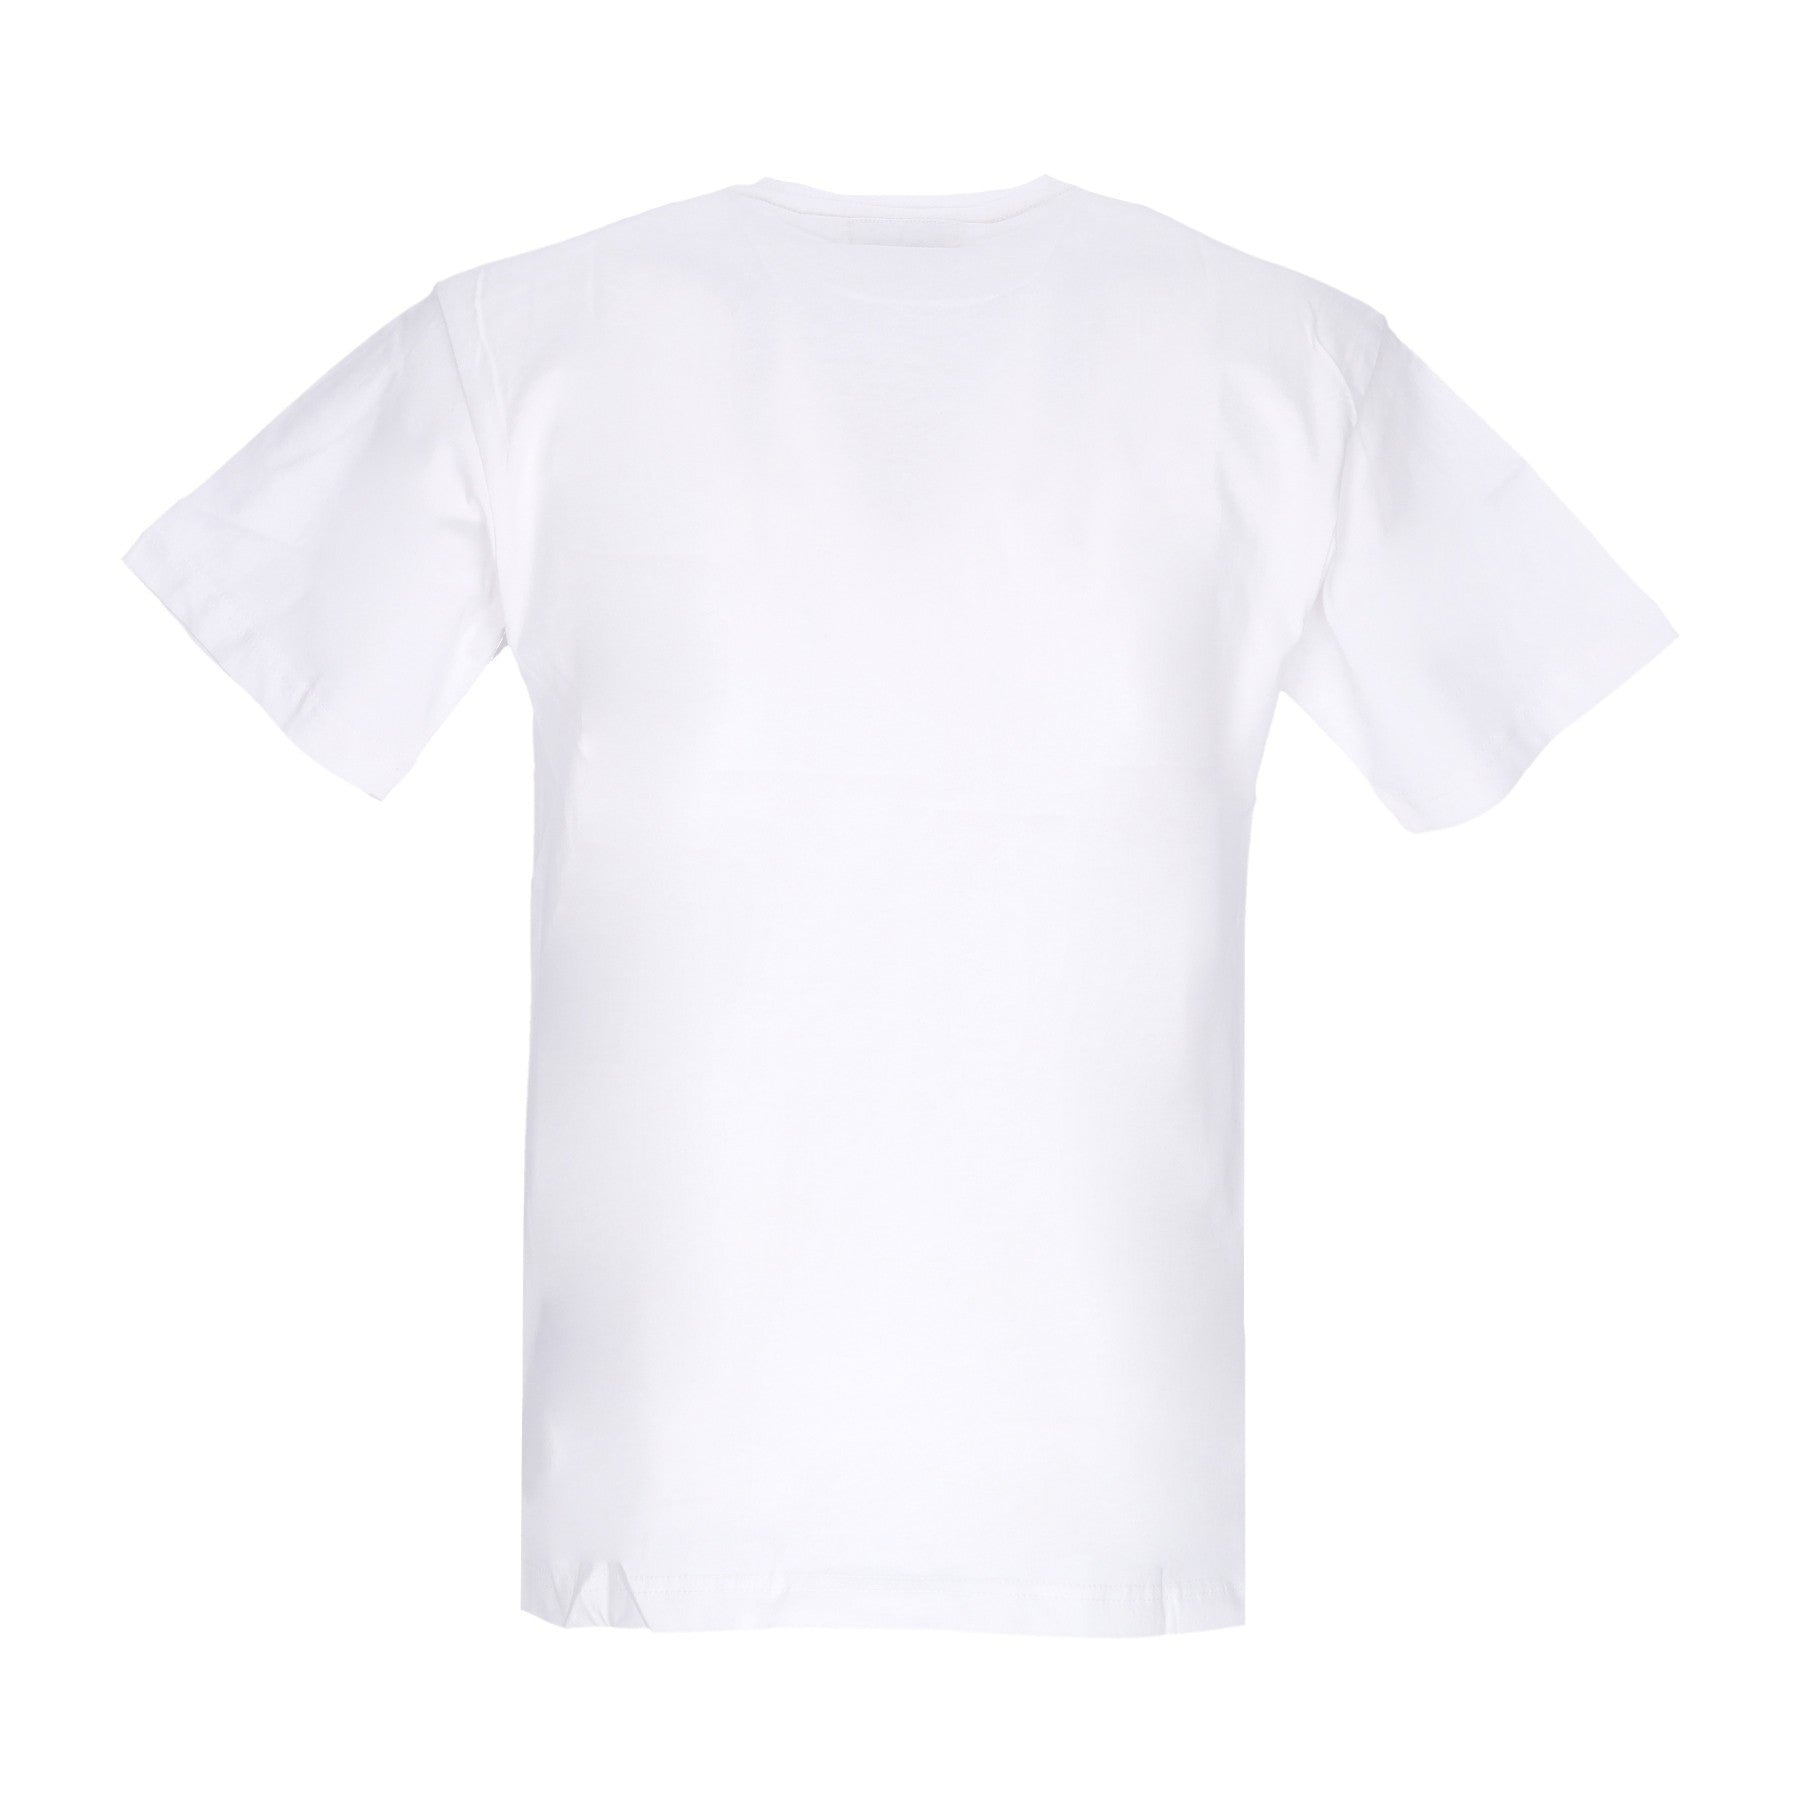 Iron Market Tee X Smiley White Men's T-Shirt